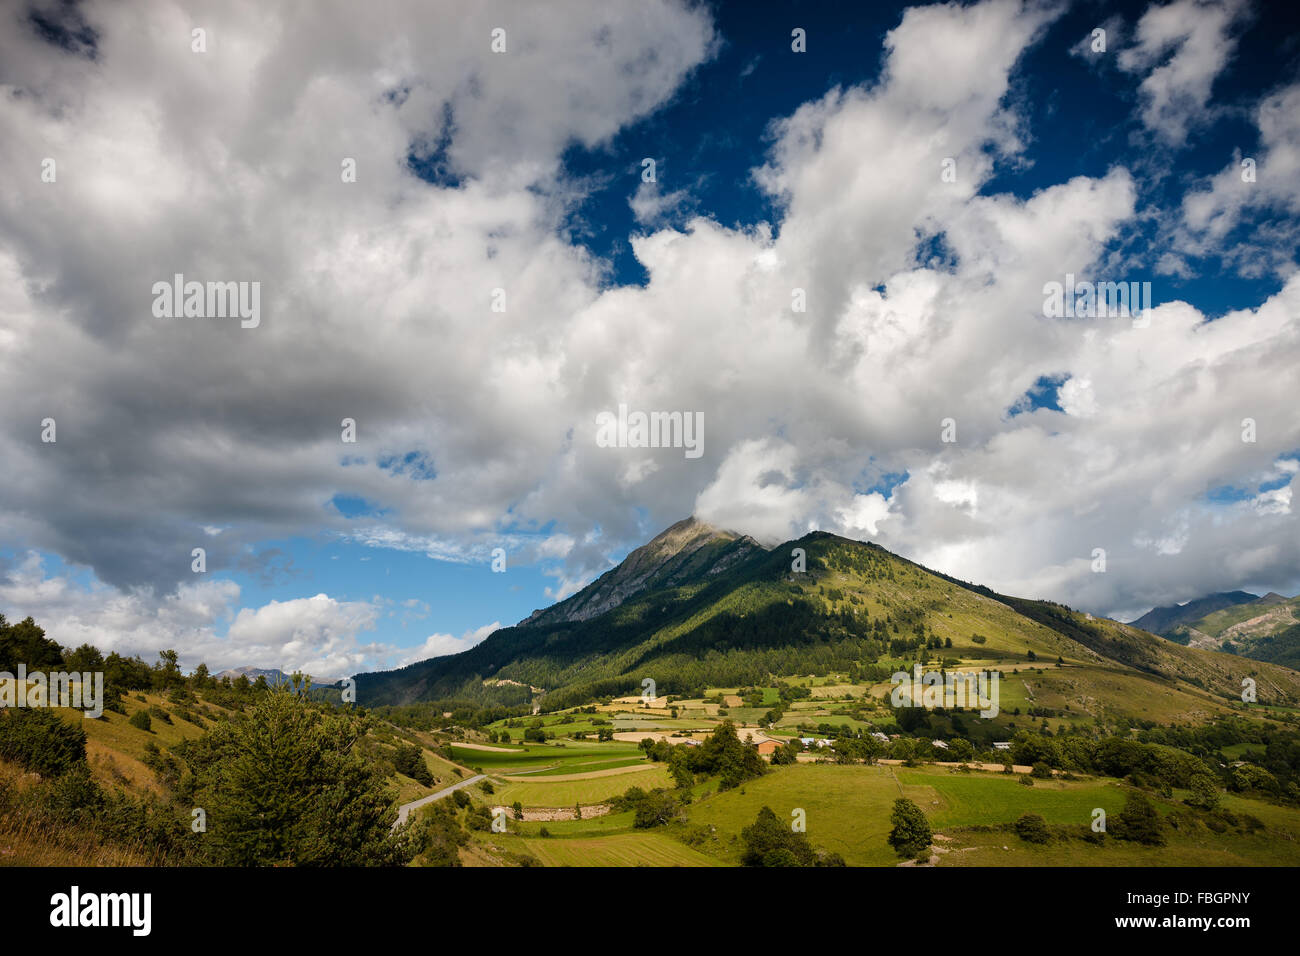 Le montagne del Cuchon e Petite Autane con il villaggio di Les Faix, Champsaur, sulle alpi francesi in estate. Hautes-Alpes Foto Stock